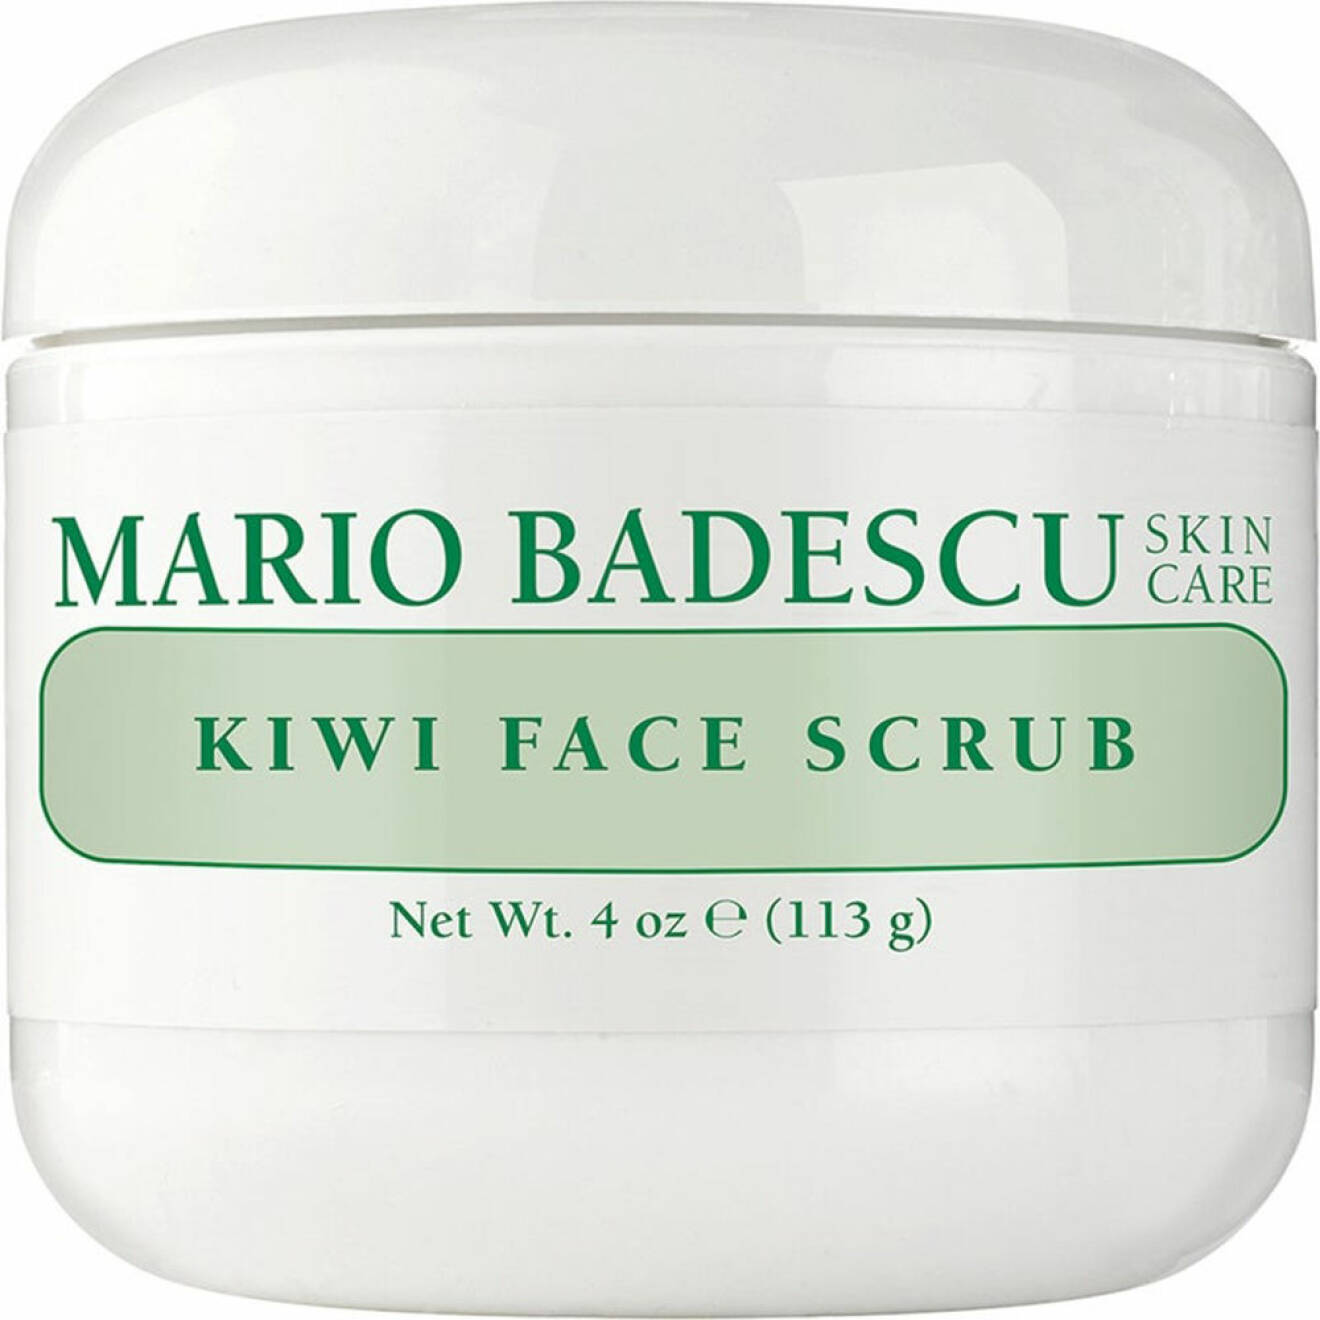 Kiwi face scrub